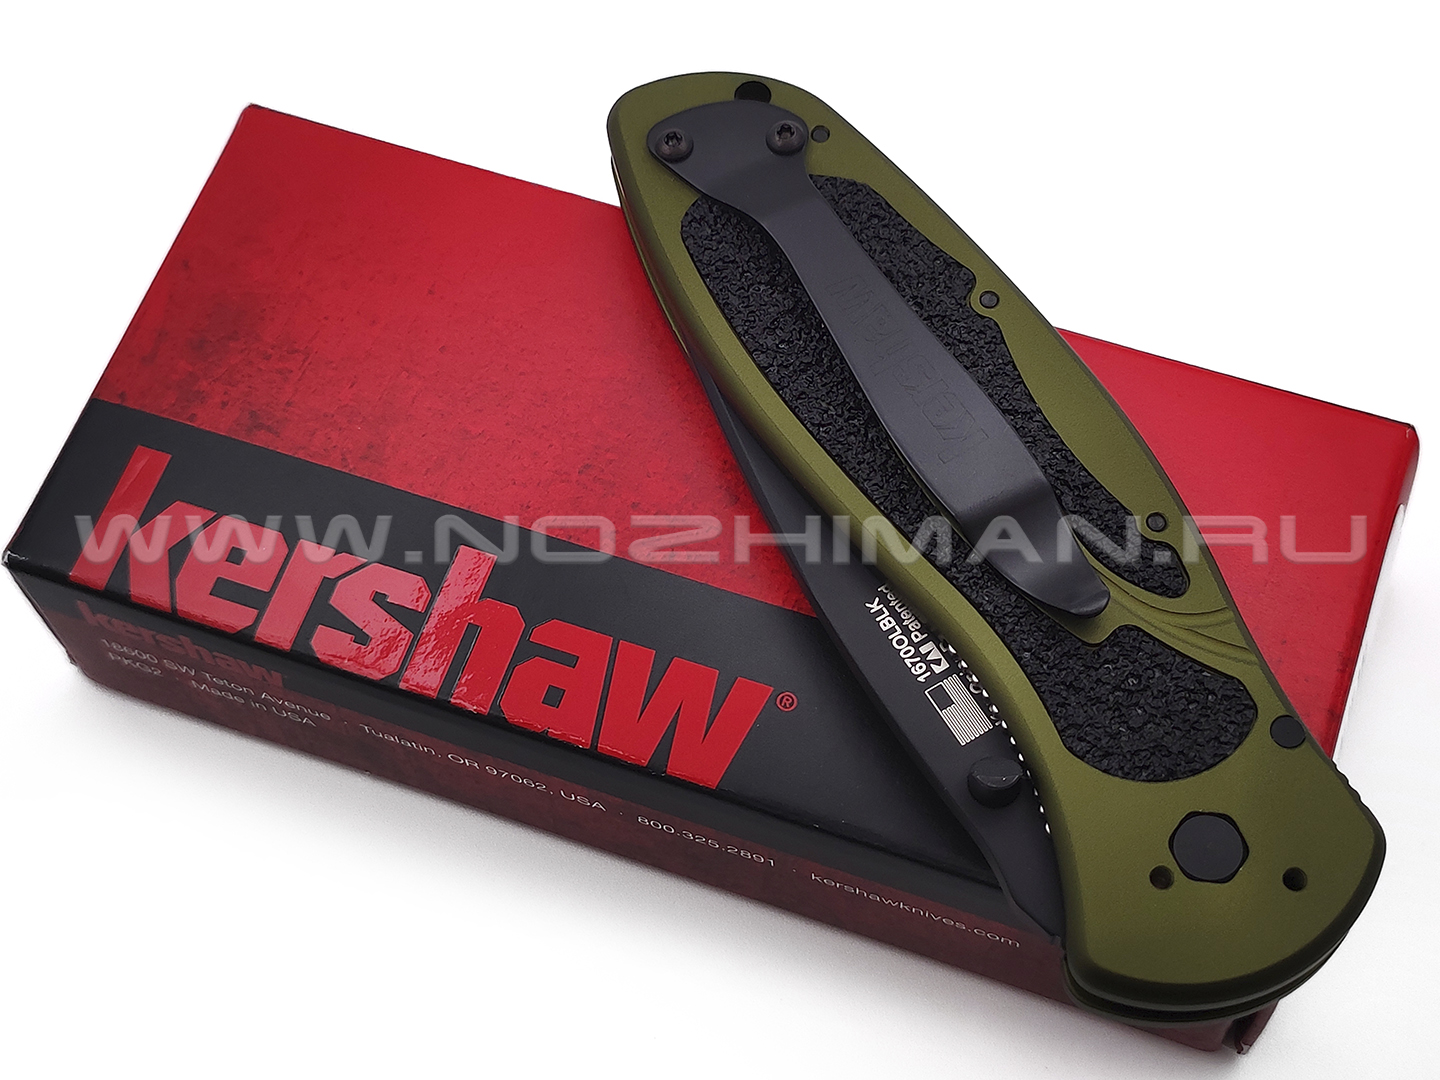 Нож Kershaw Blur 1670OLBLK сталь 14C28N DLC, рукоять Trac-Tec, Aluminum 6061-T6 green